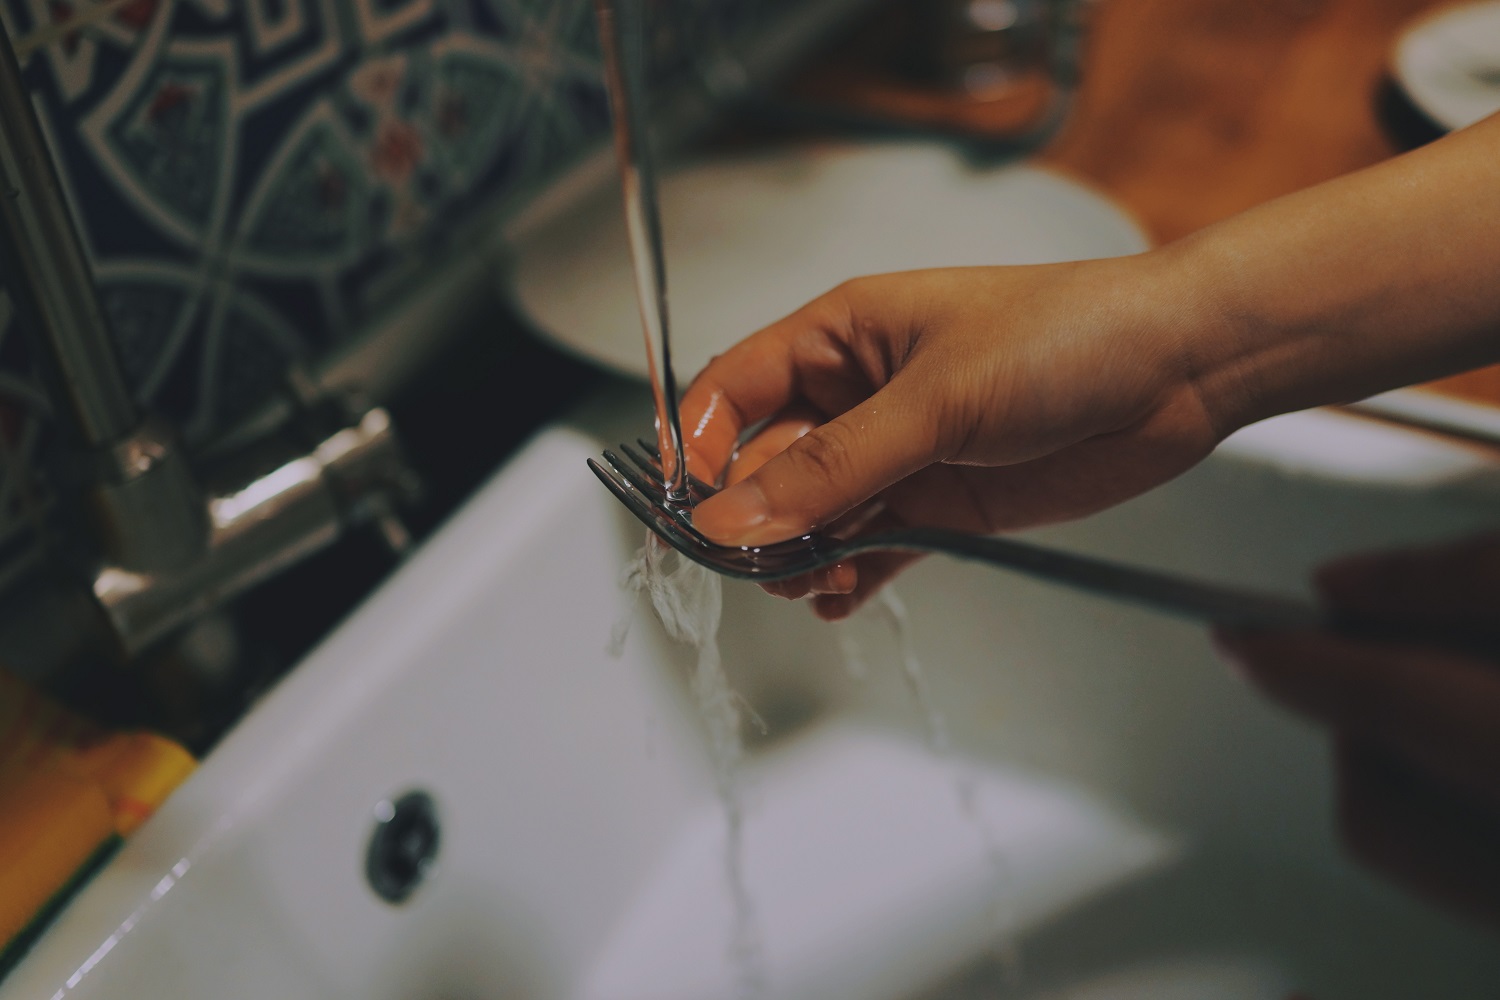 Kas indus plauna švariau: jūs ar indaplovė?